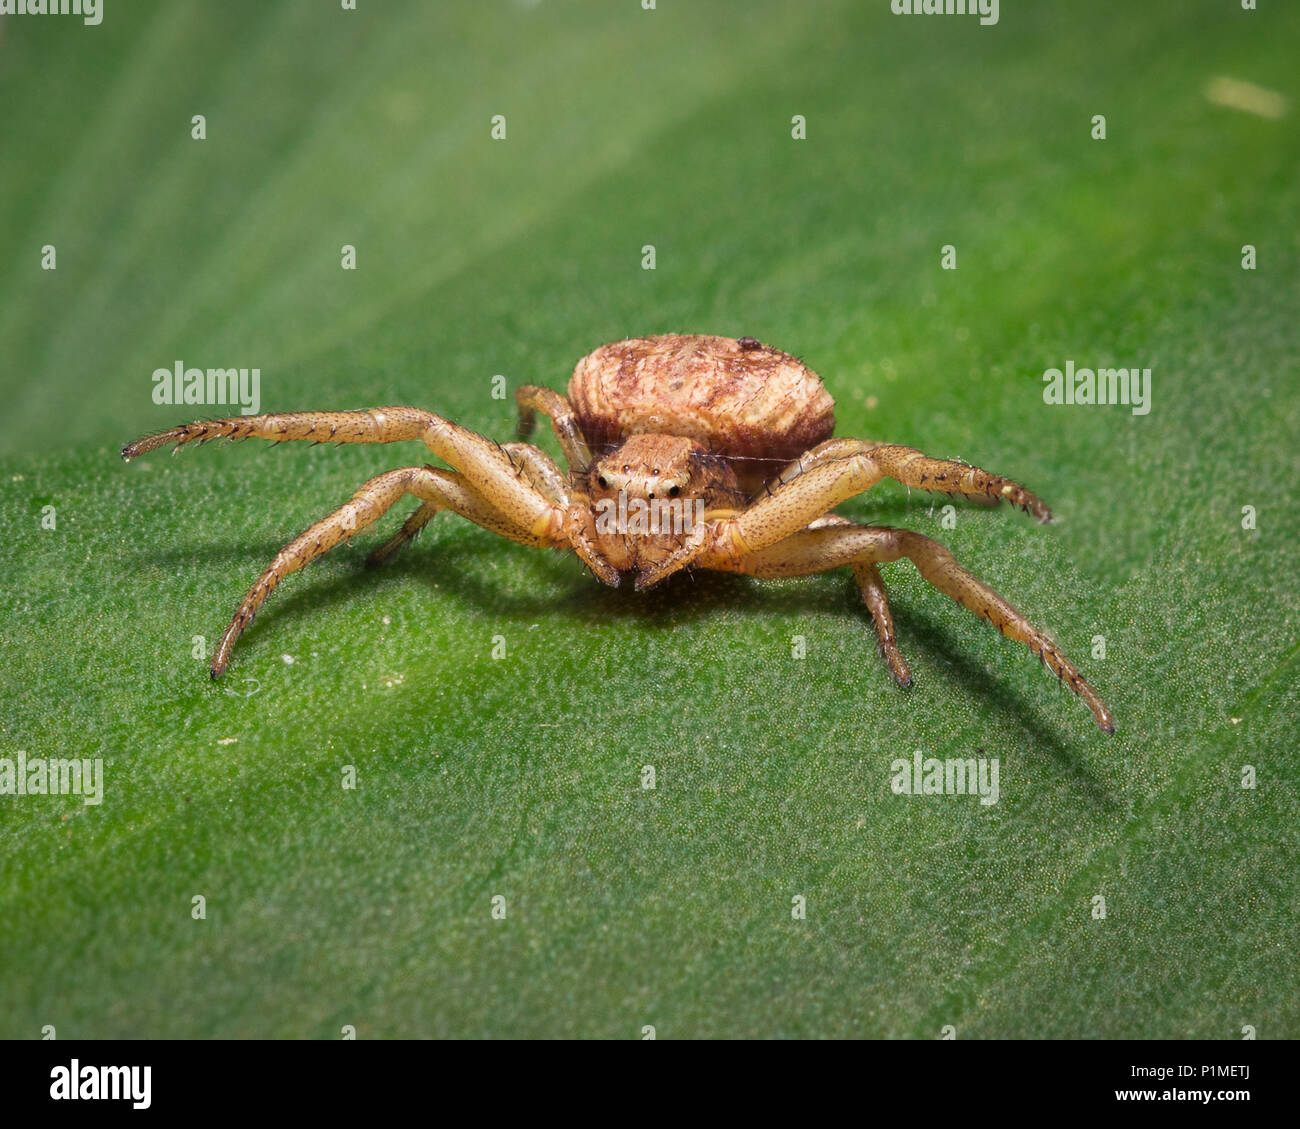 Un brown araignée crabe sur feuille verte Banque D'Images